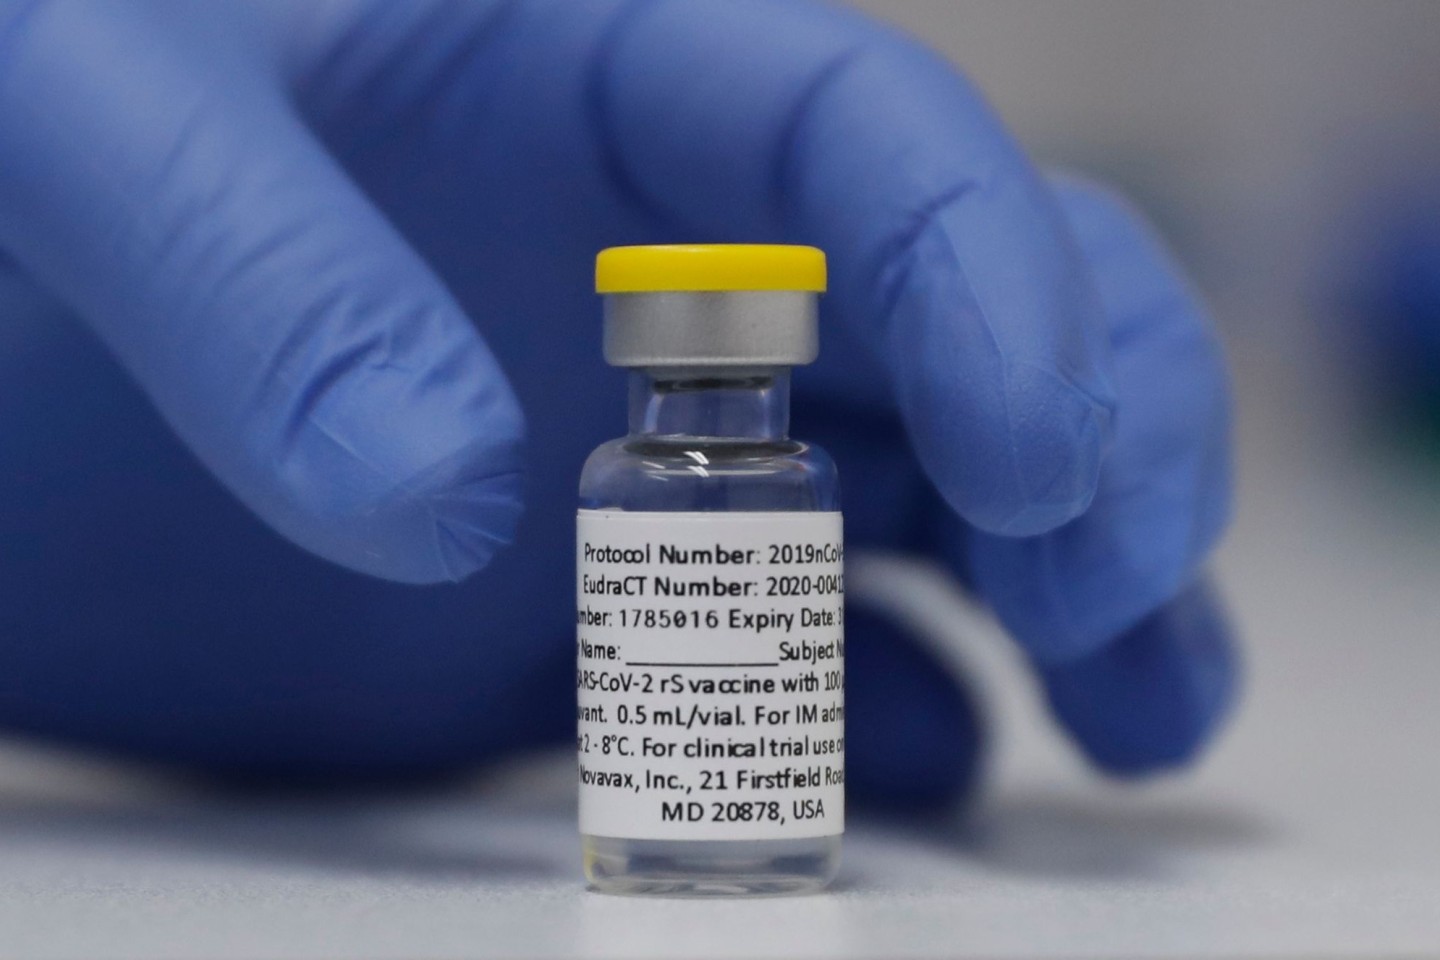 Noch nicht zugelassen: Teilnehmer einer britischen Studie für den Corona-Impfstoff Novavax wrd bzb empfohlen sich mit einem anderen Impfstoff zu schützen.